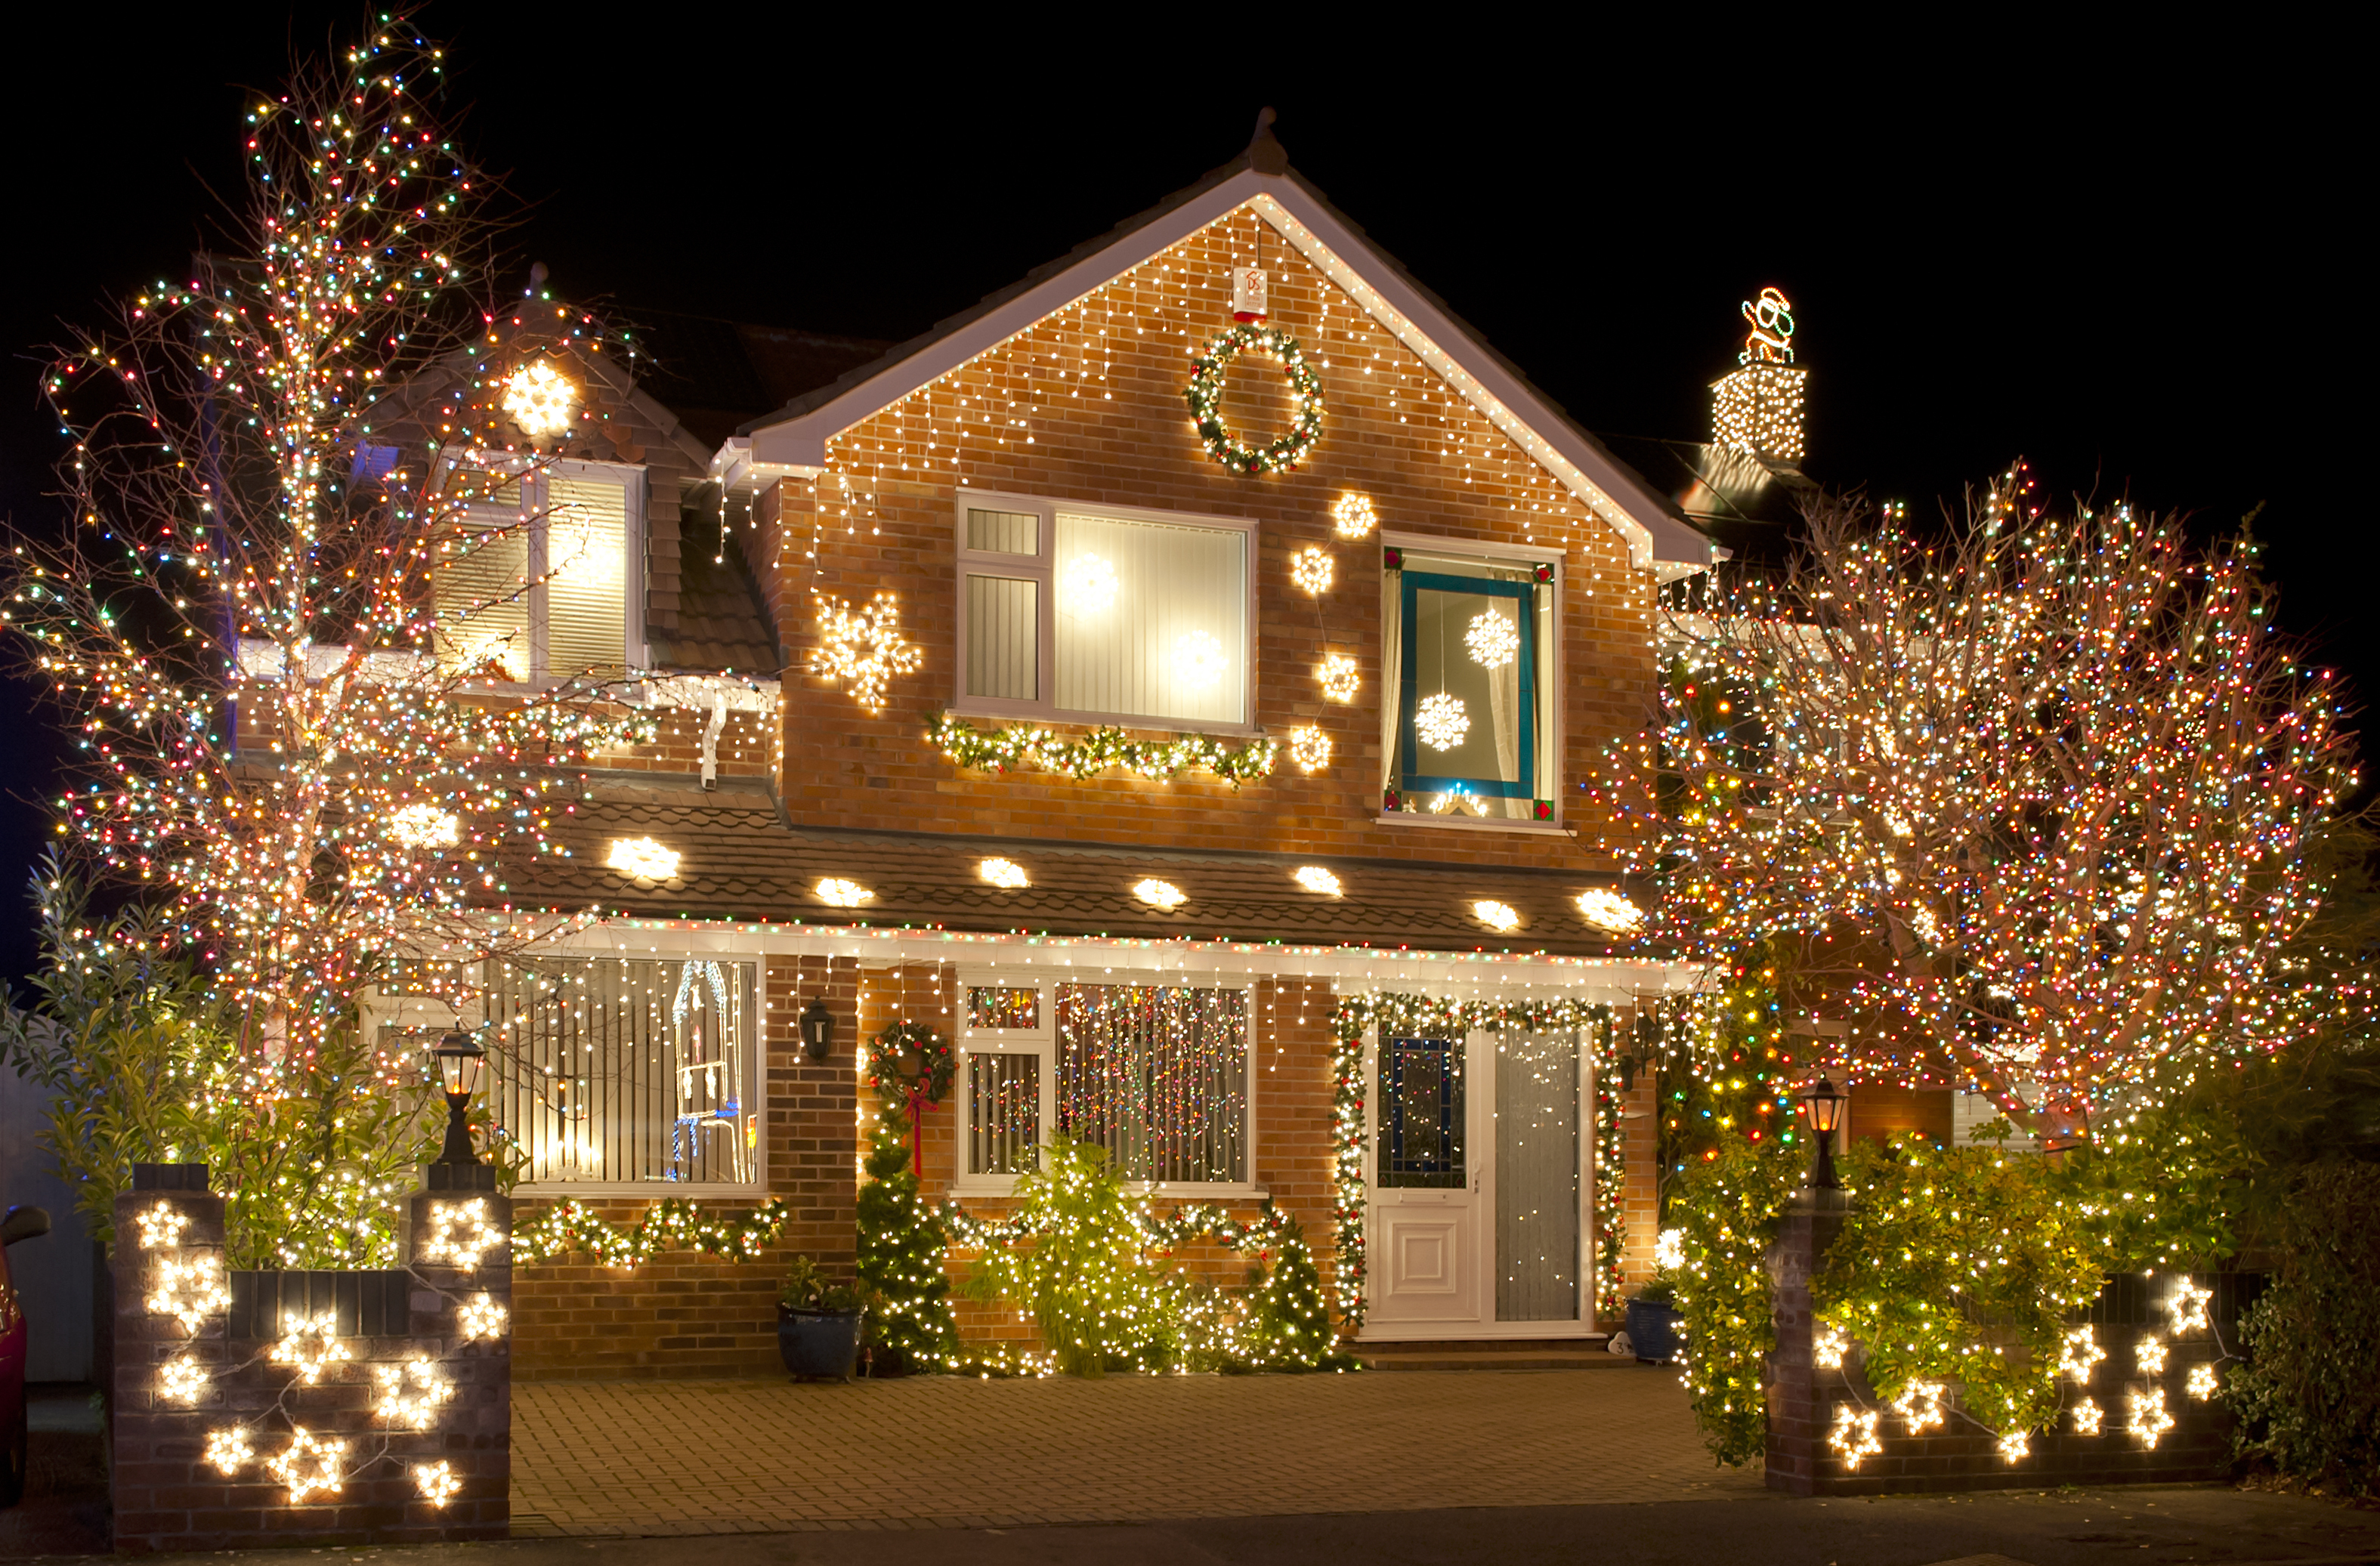 Weihnachtslichter | Quelle: Shutterstock